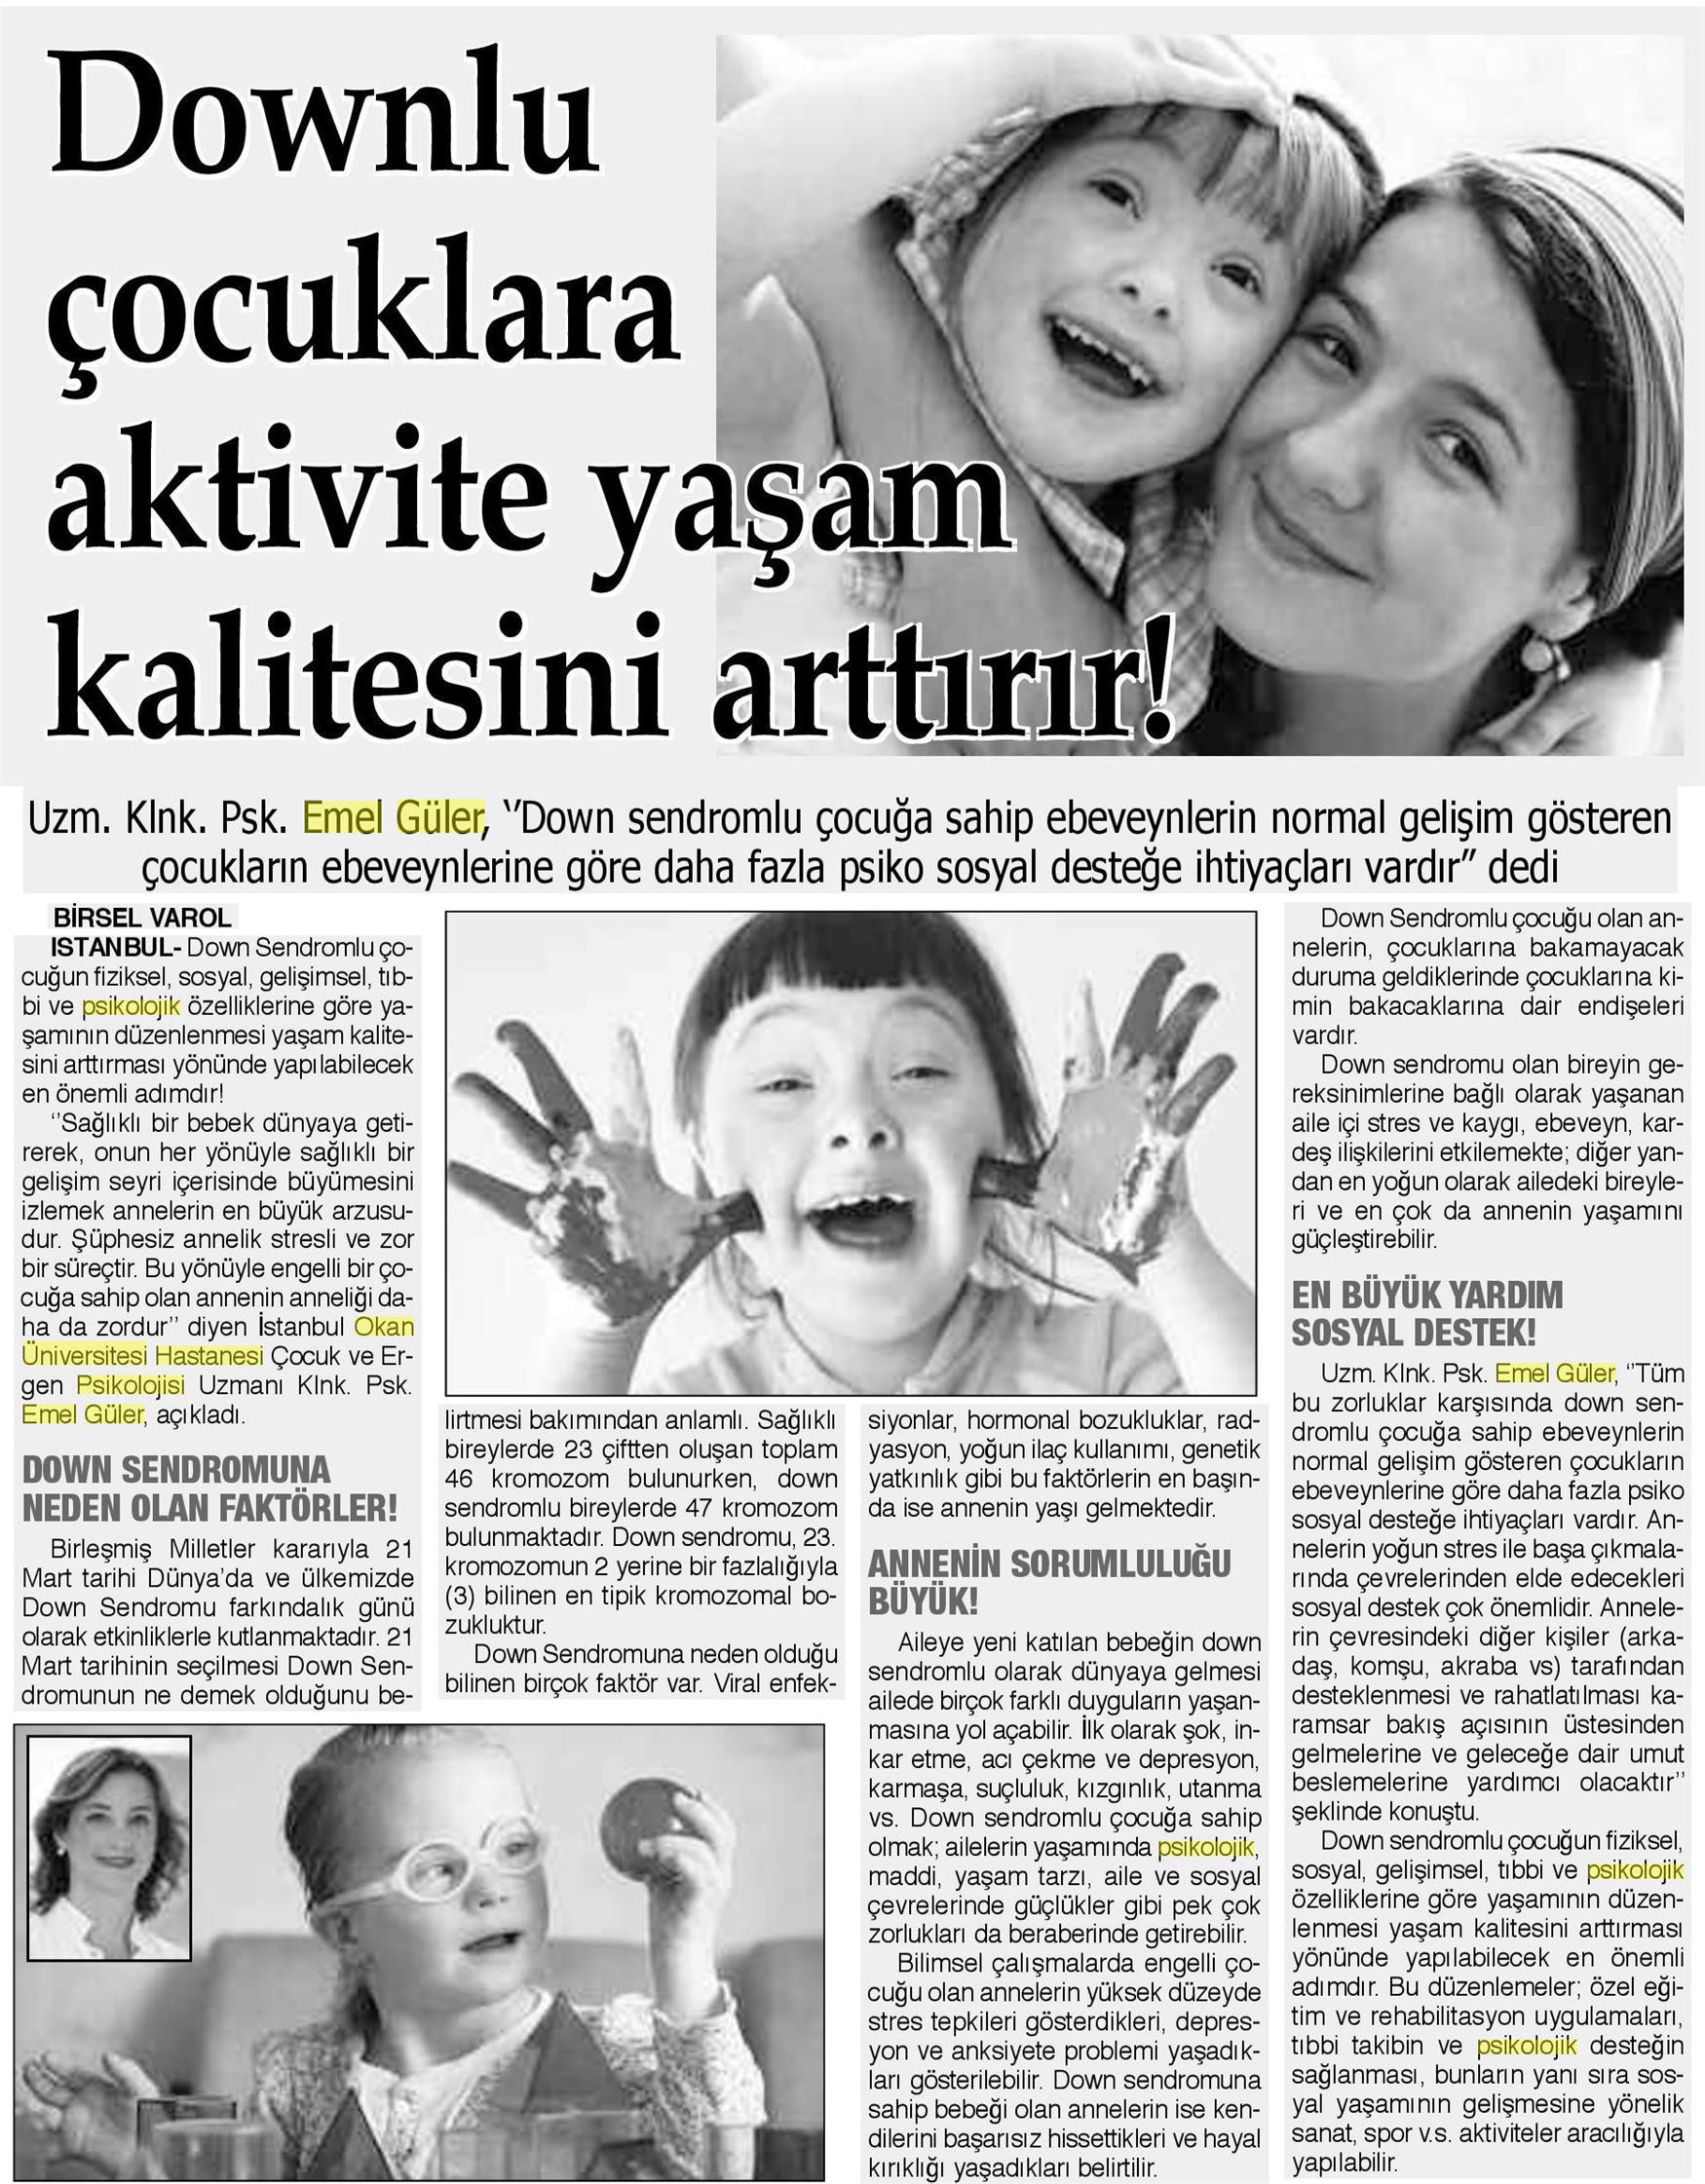 22.03.2019 Bizim Anadolu Gazetesi GÜLER, 